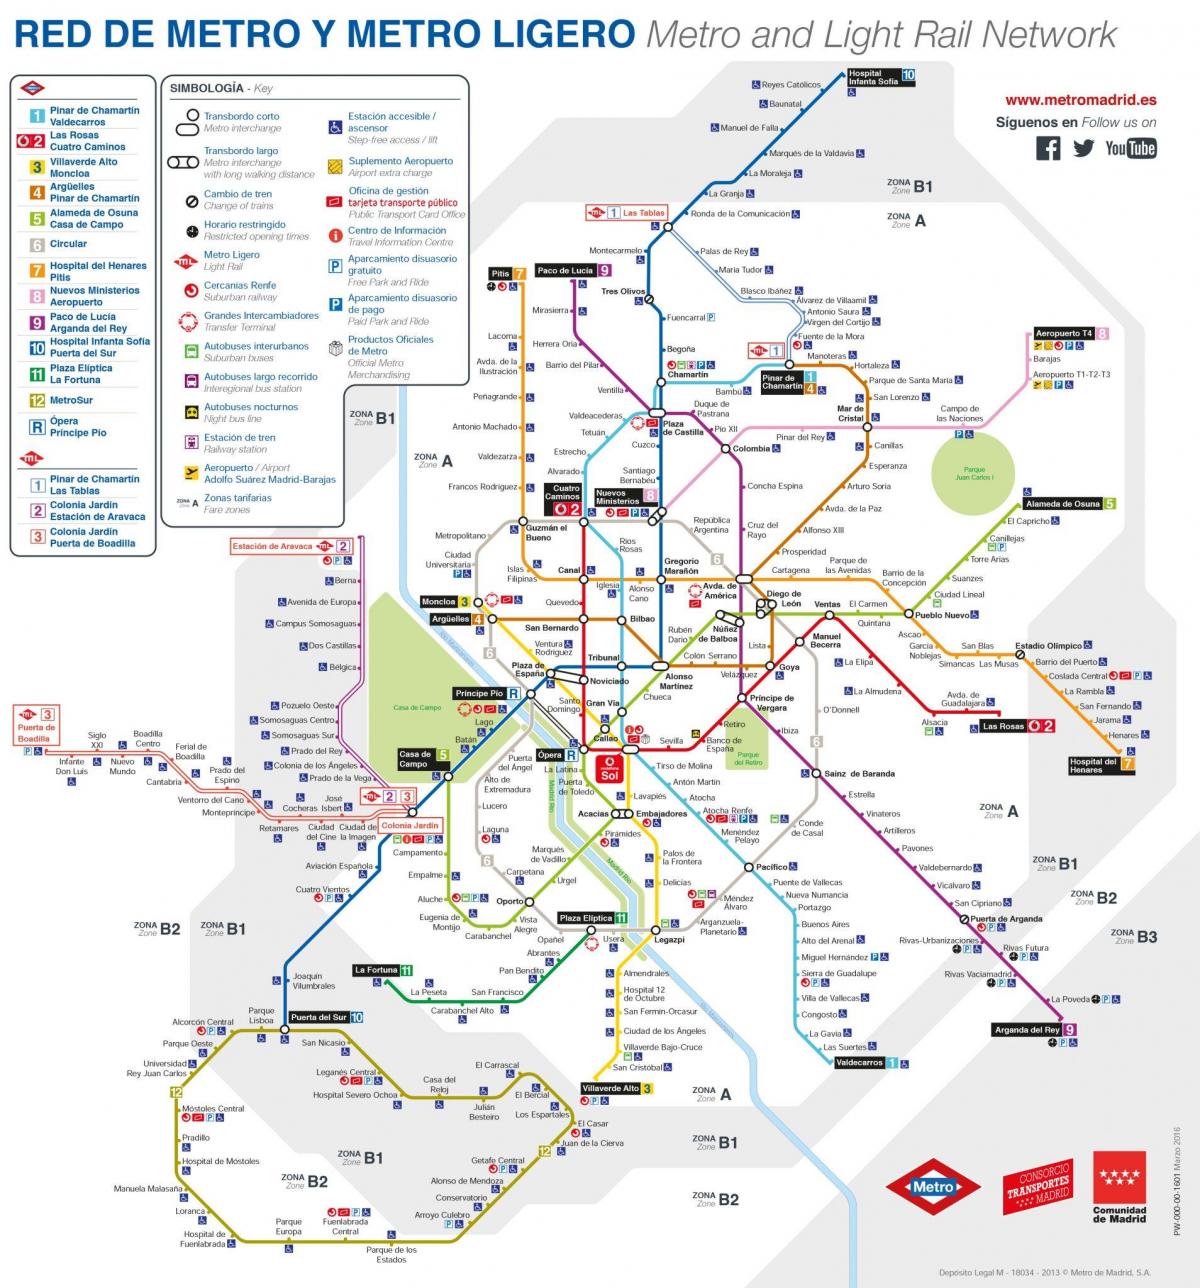 Karte von Madrid mit den öffentlichen Verkehrsmitteln